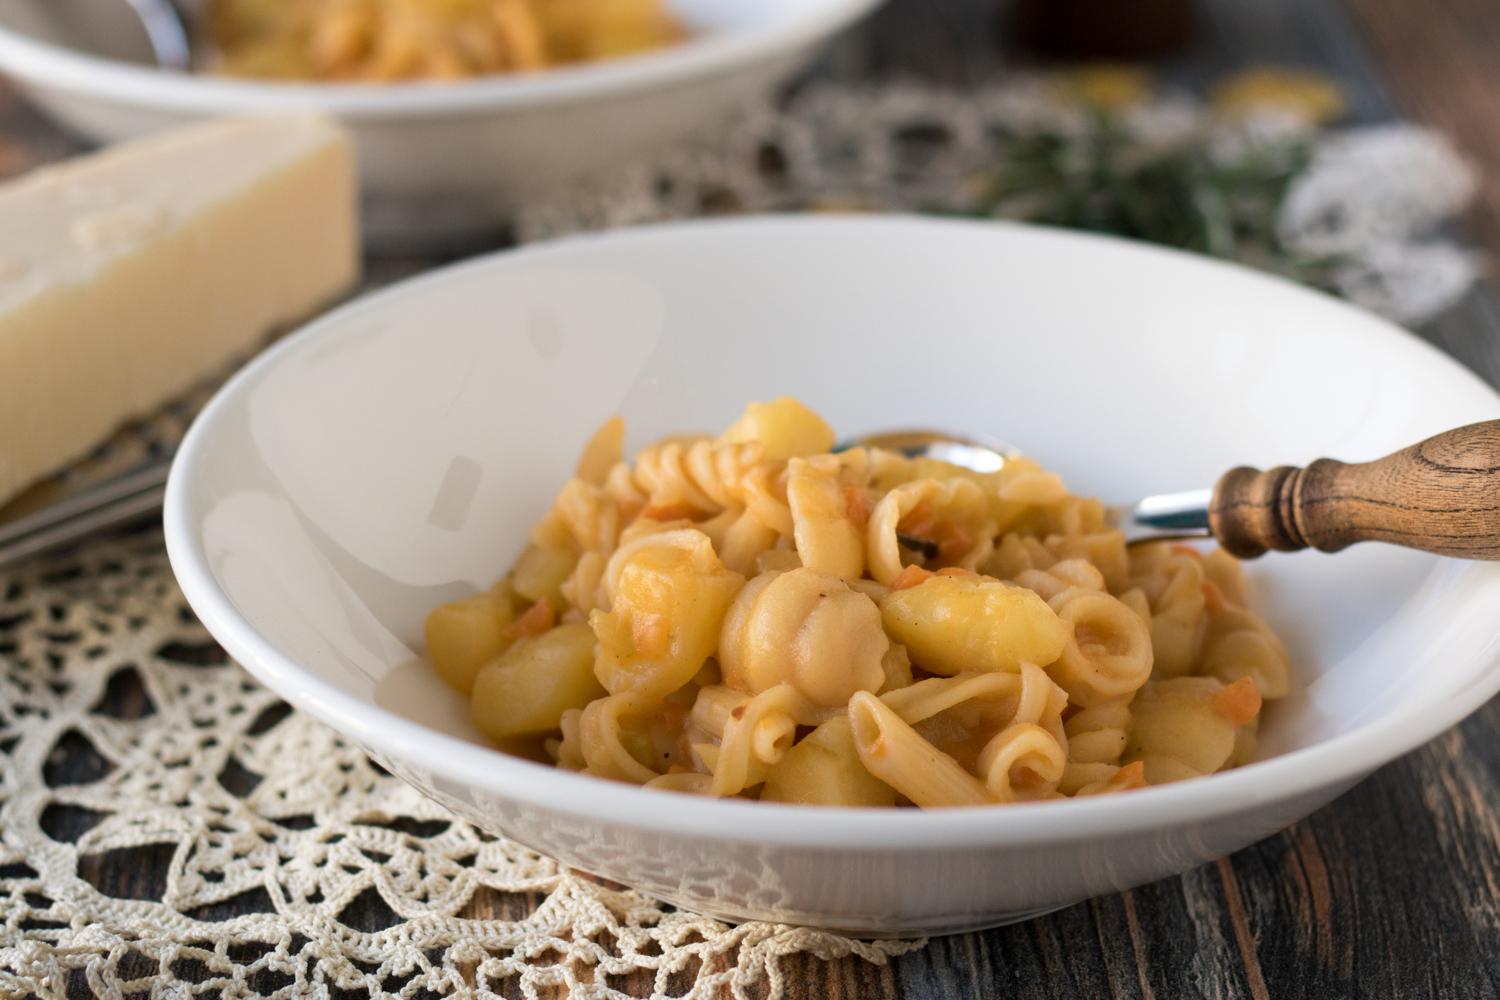 Rezept für den Pastaklassiker aus Italien: Pasta e patate alla napoletana. Ein einfaches Nudelgericht (One Pot Gericht), das als erster Gang serviert wird. Kartoffeln dienen hier als Hauptzutat.